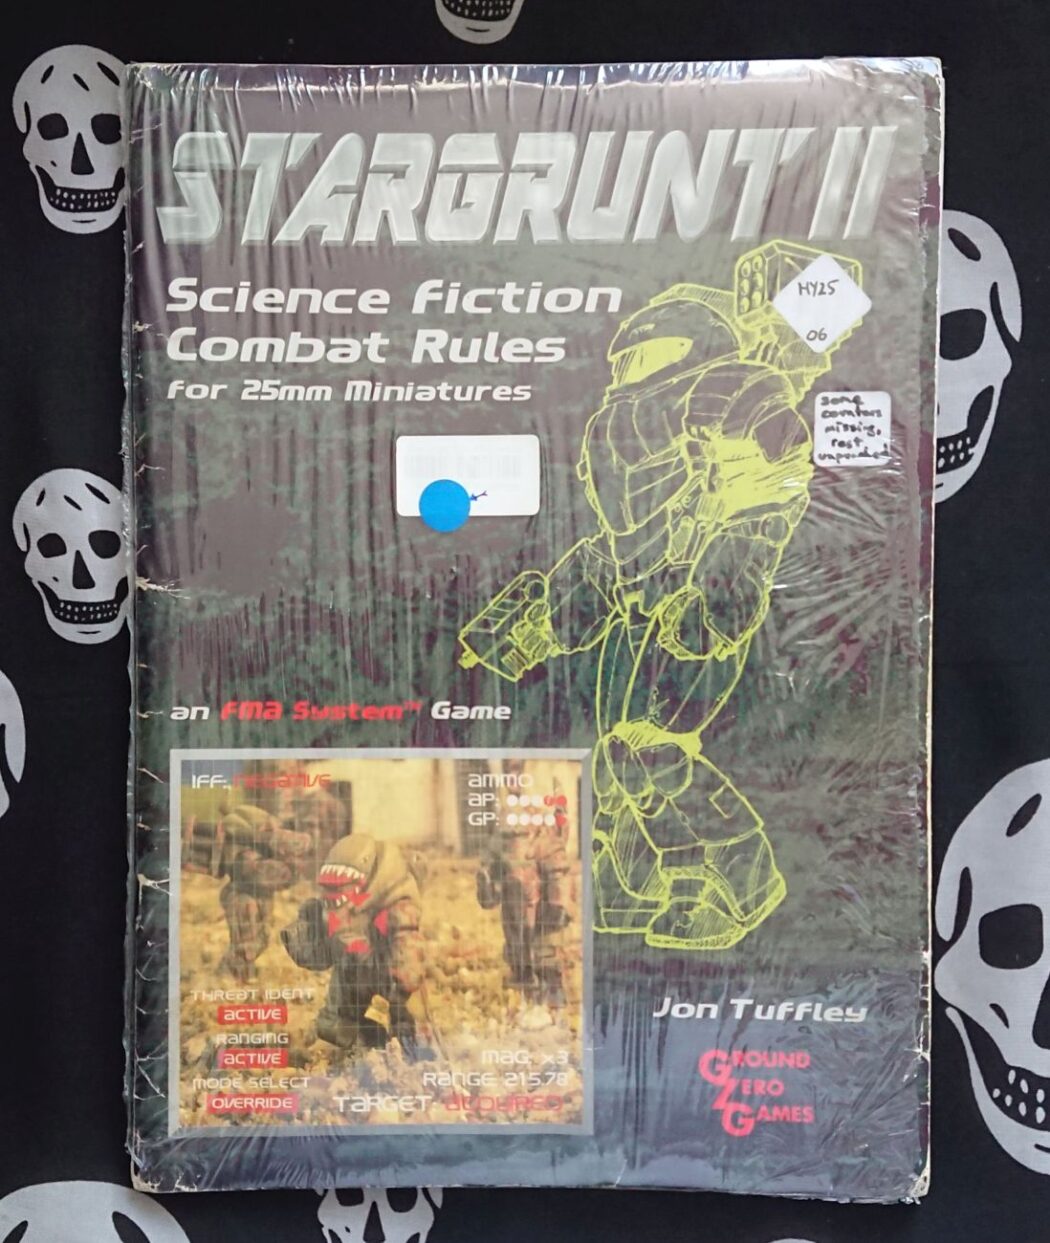 Stargrunt II cover